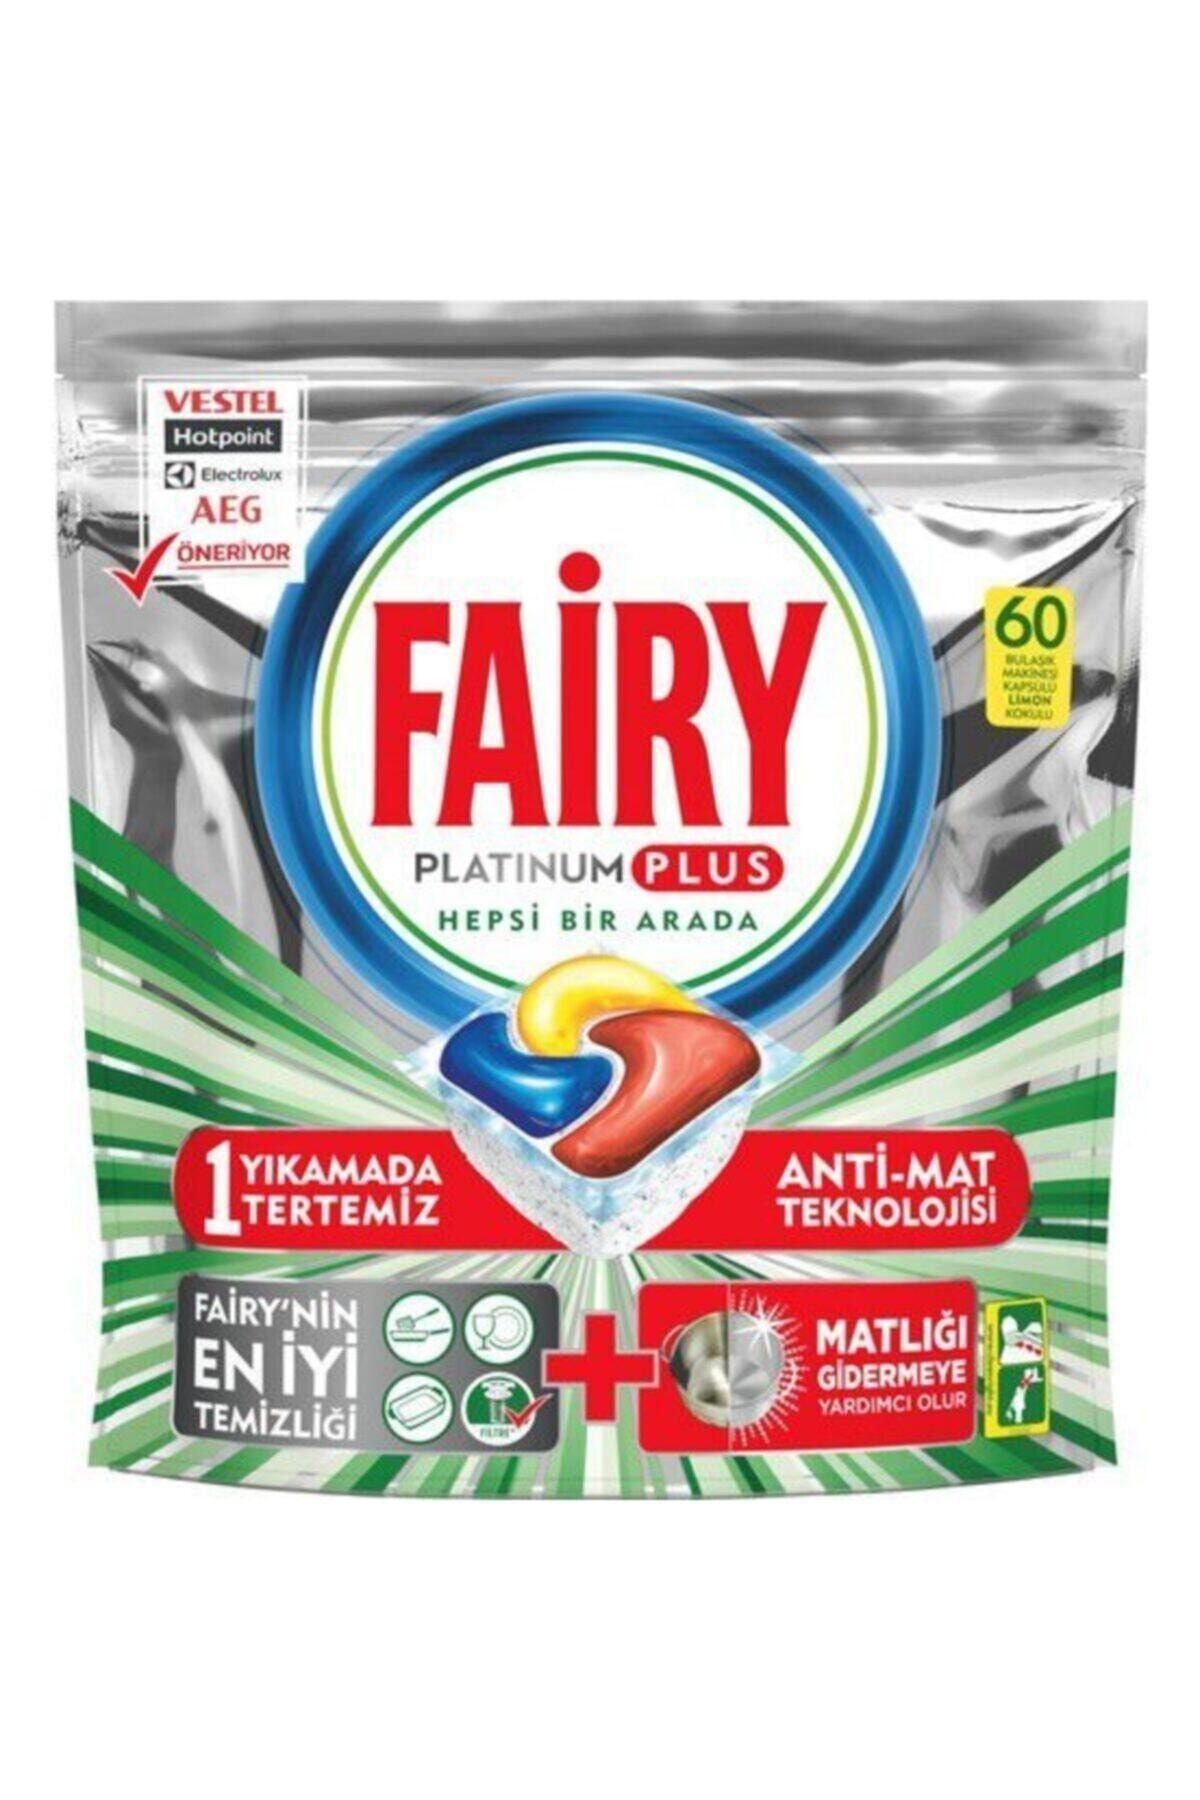 Fairy Platinum Plus Hepsi Bir Arada Bulaşık Makinesi Deterjanı Kapsülü 60 Yıkama